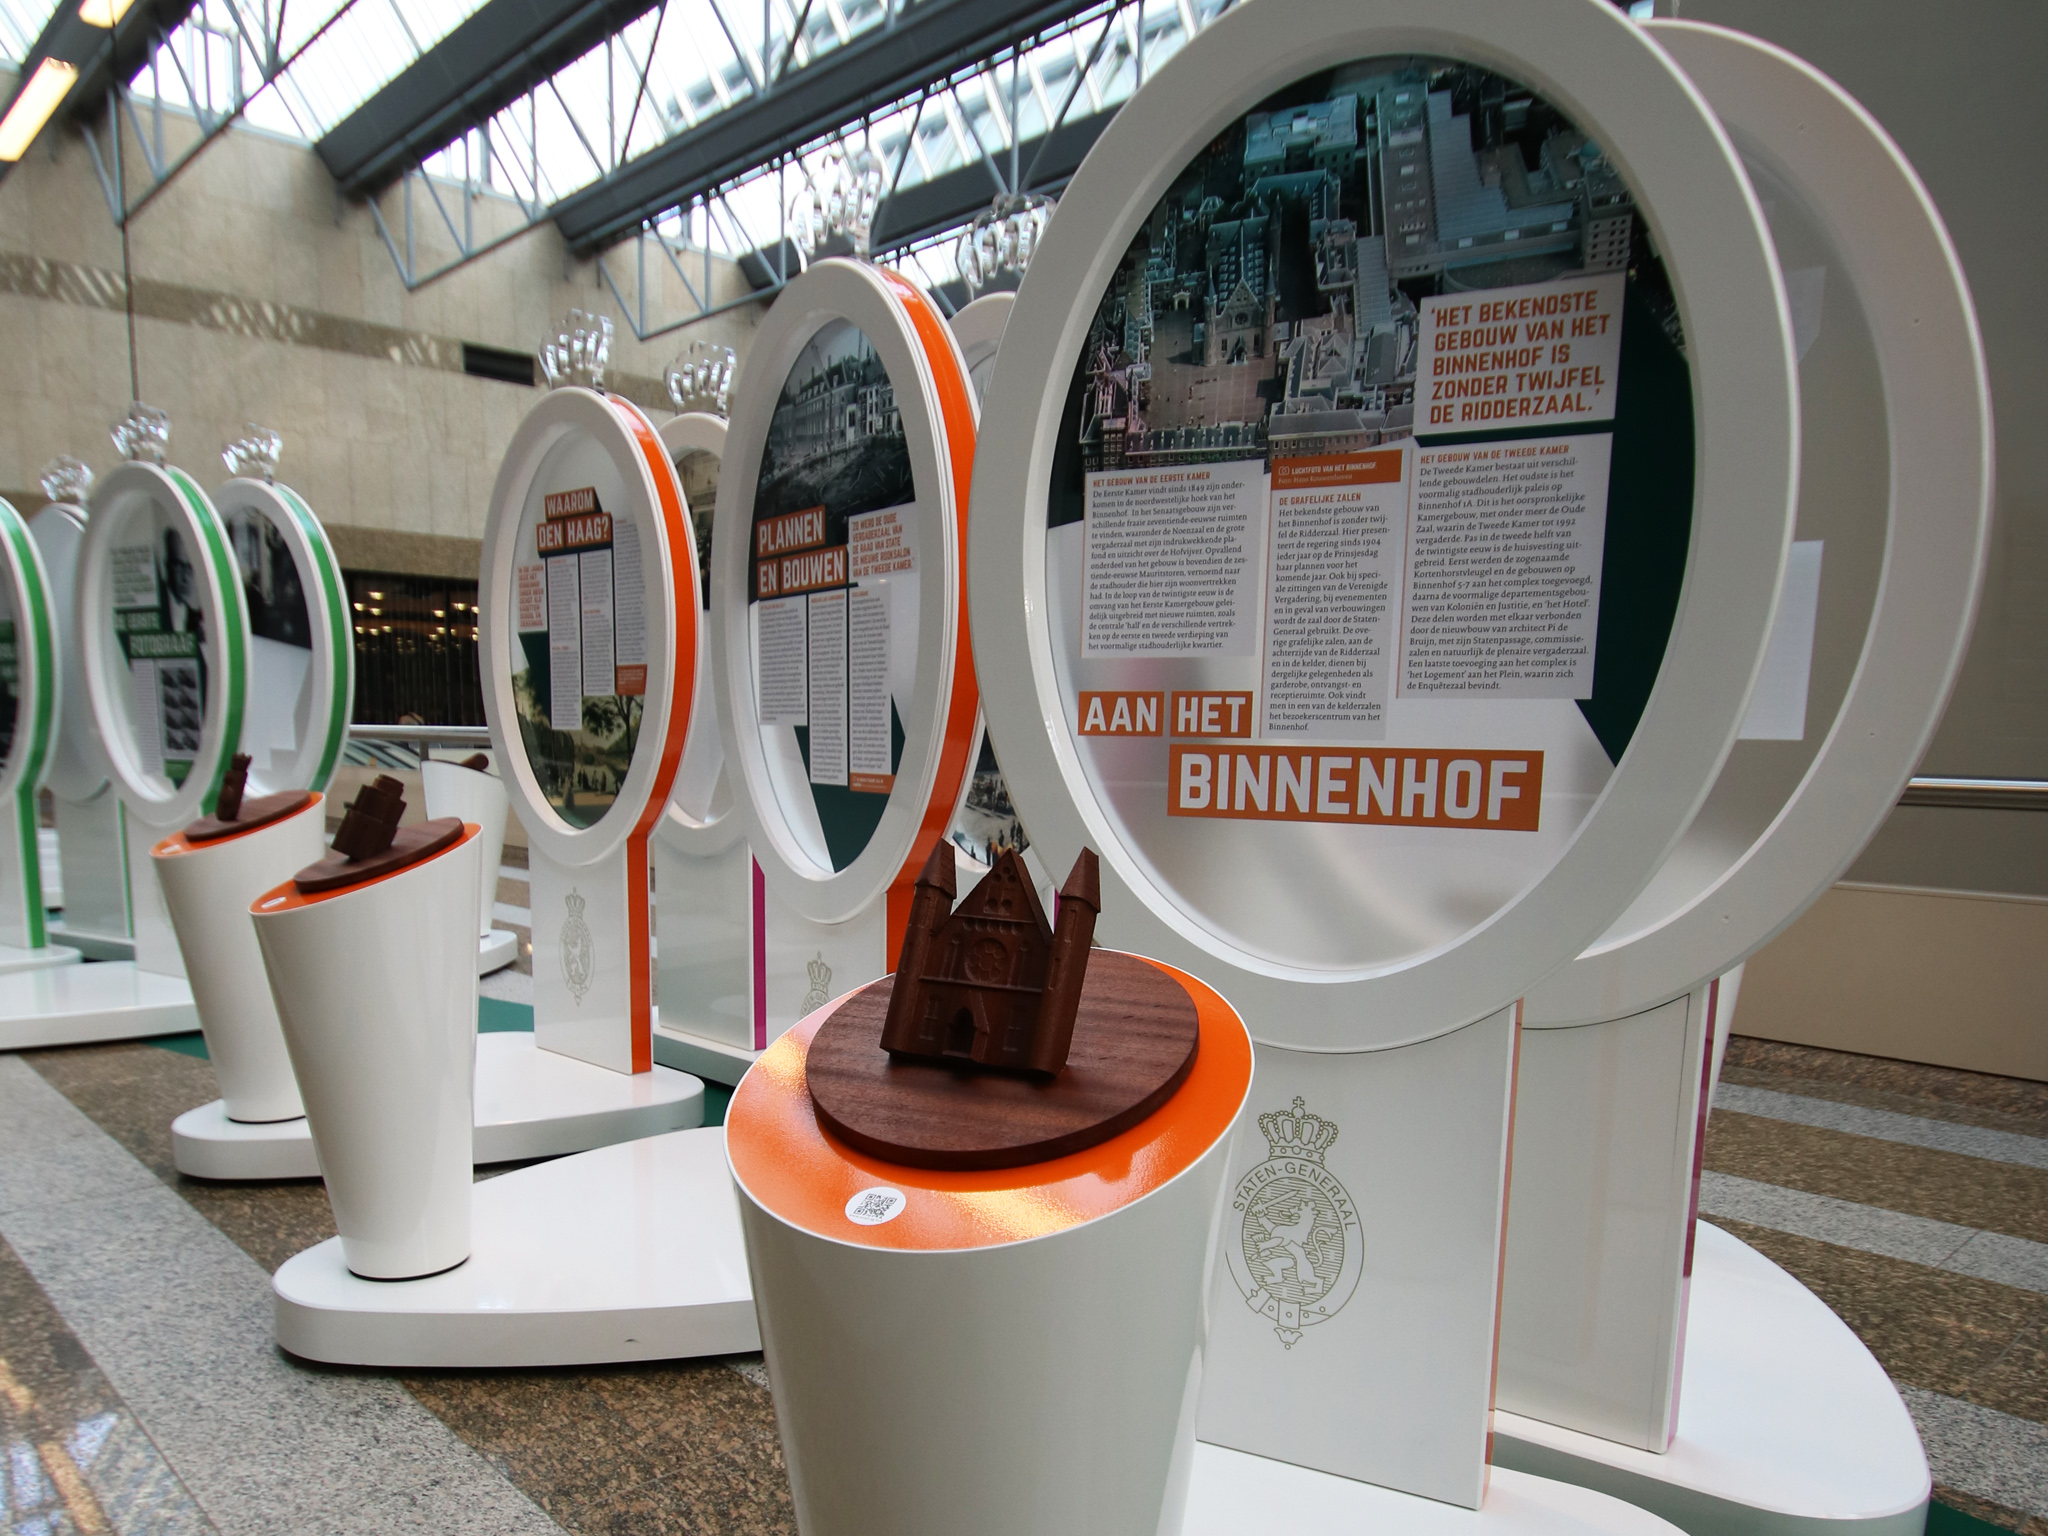 ontwerp tentoonstelling 200 jaar Staten Generaal - Design exhibition 200 years Dutch Parliament